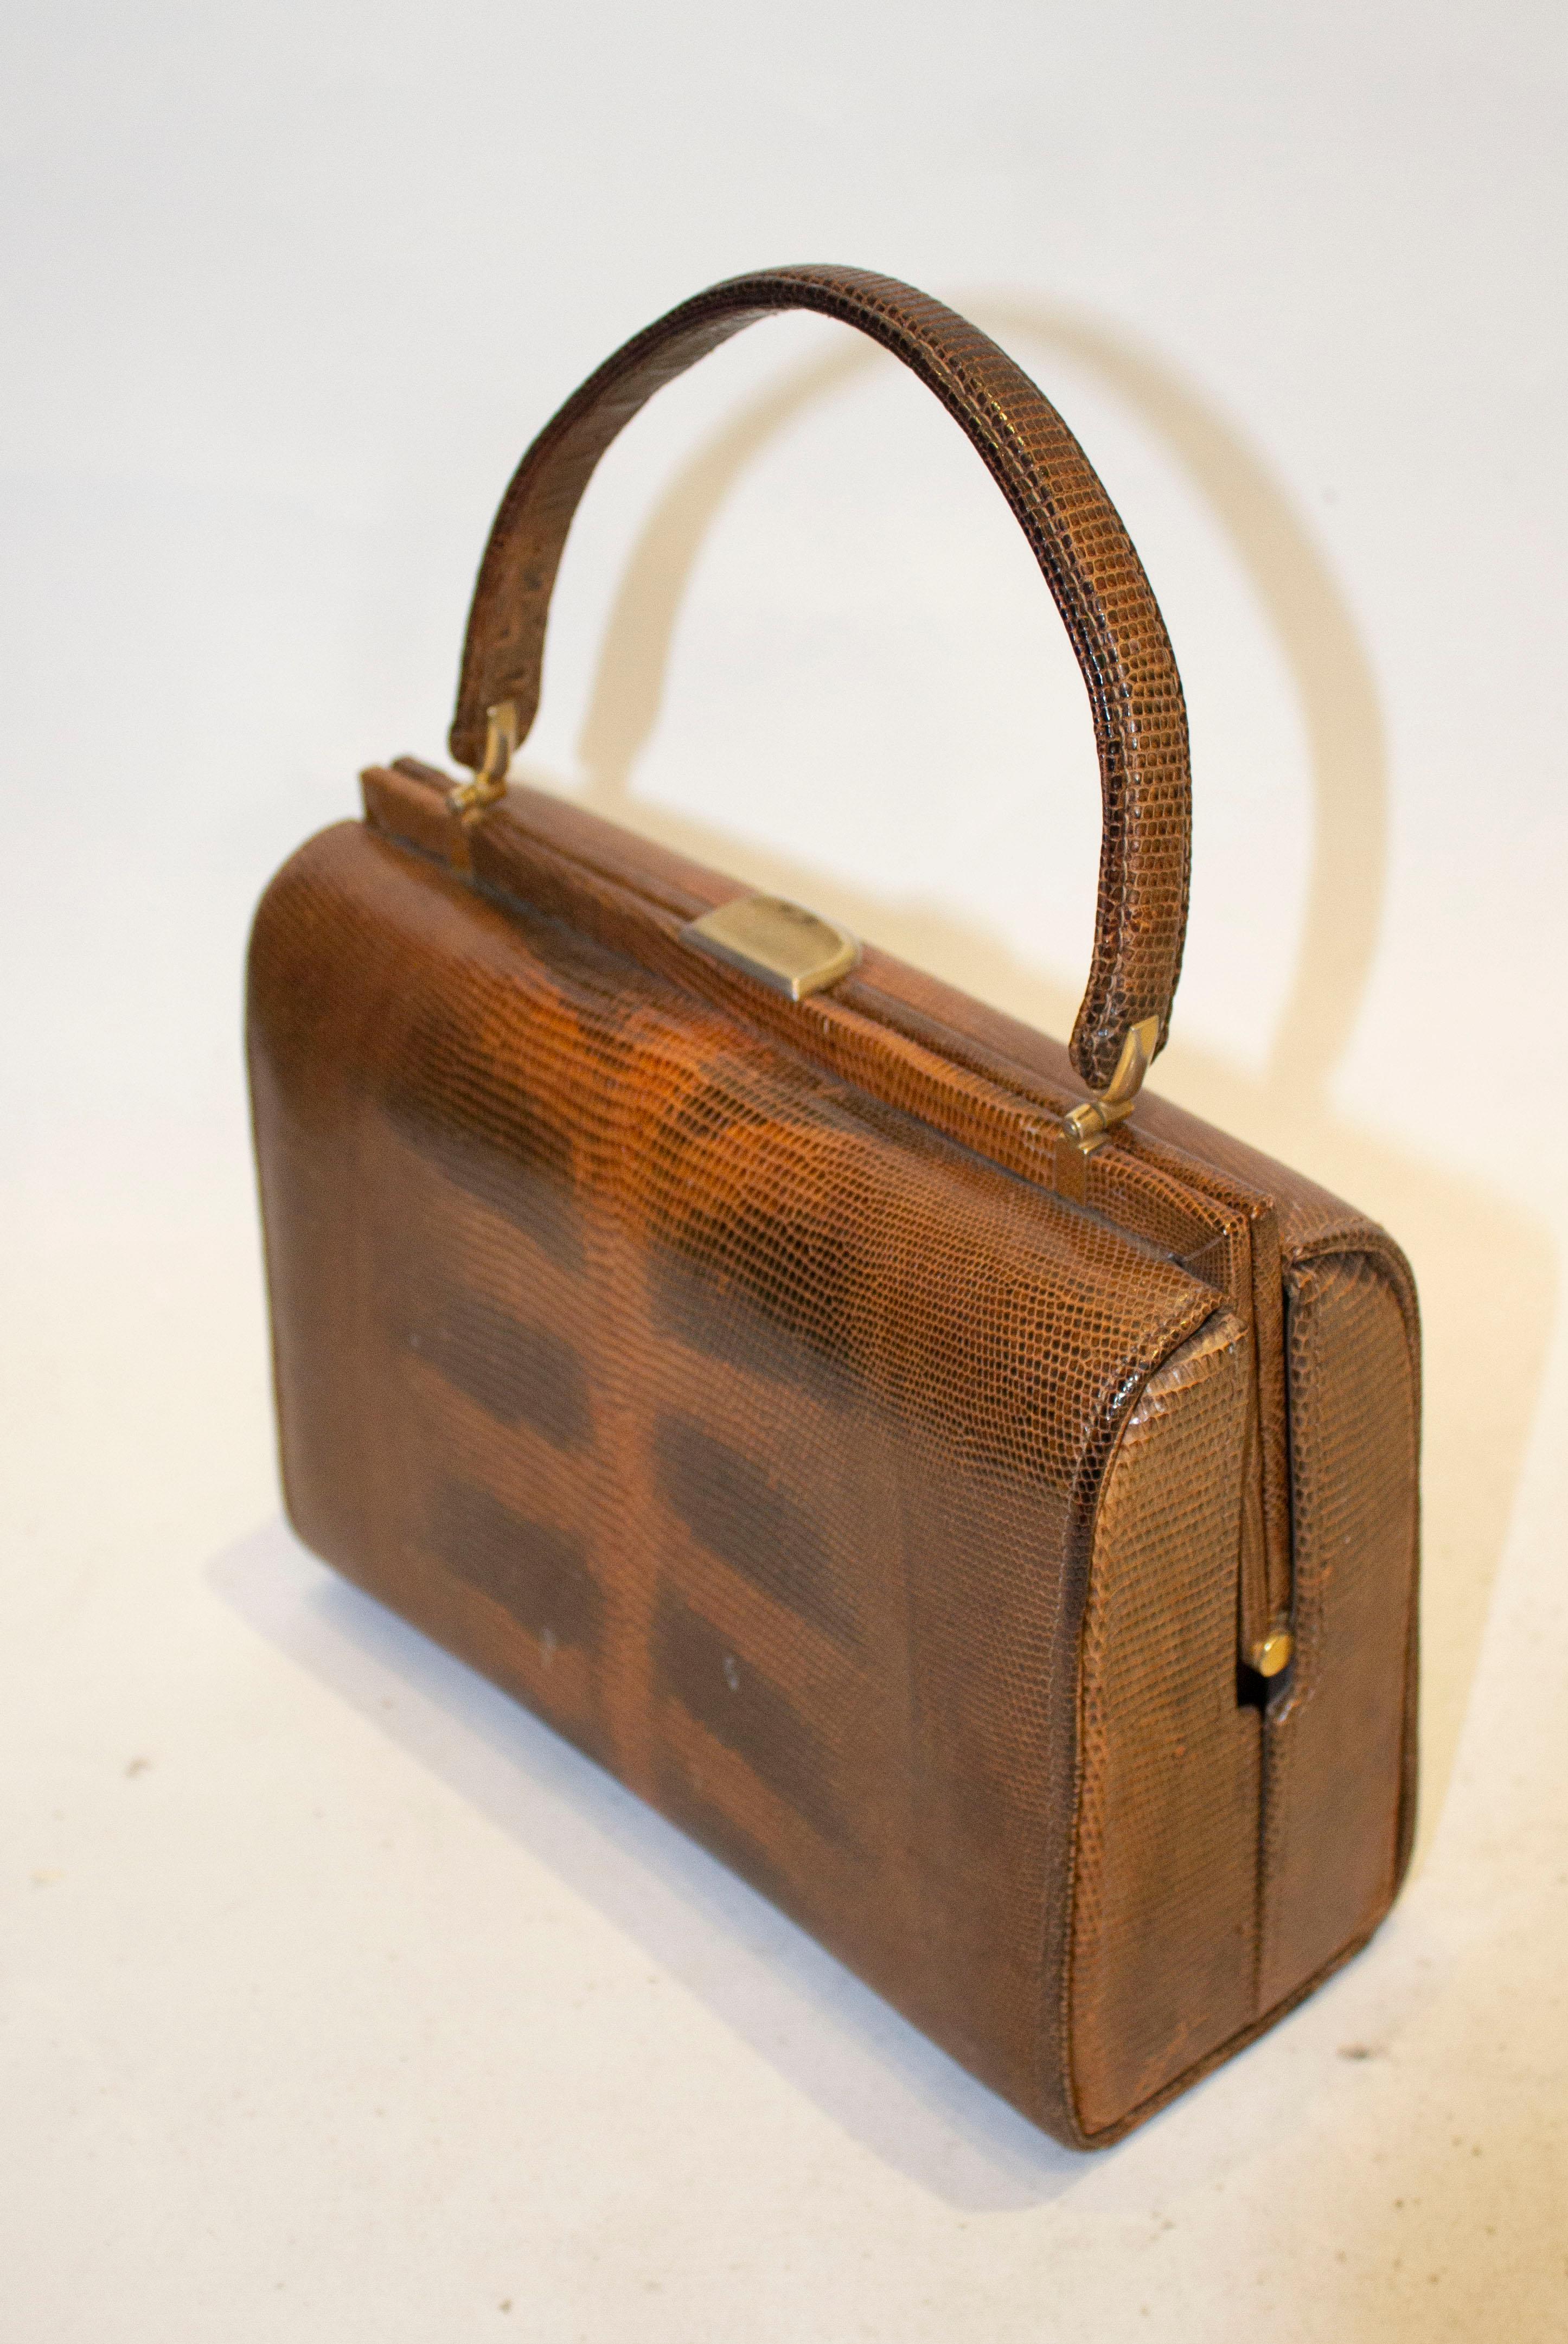 Un sac à main vintage en lézard brun à poignée supérieure.  Le sac est doublé en daim, et possède une poche zippée,  une pochette et une pochette à poppe. 
Mesures : longueur 9''.largeur 4'' hauteur ''